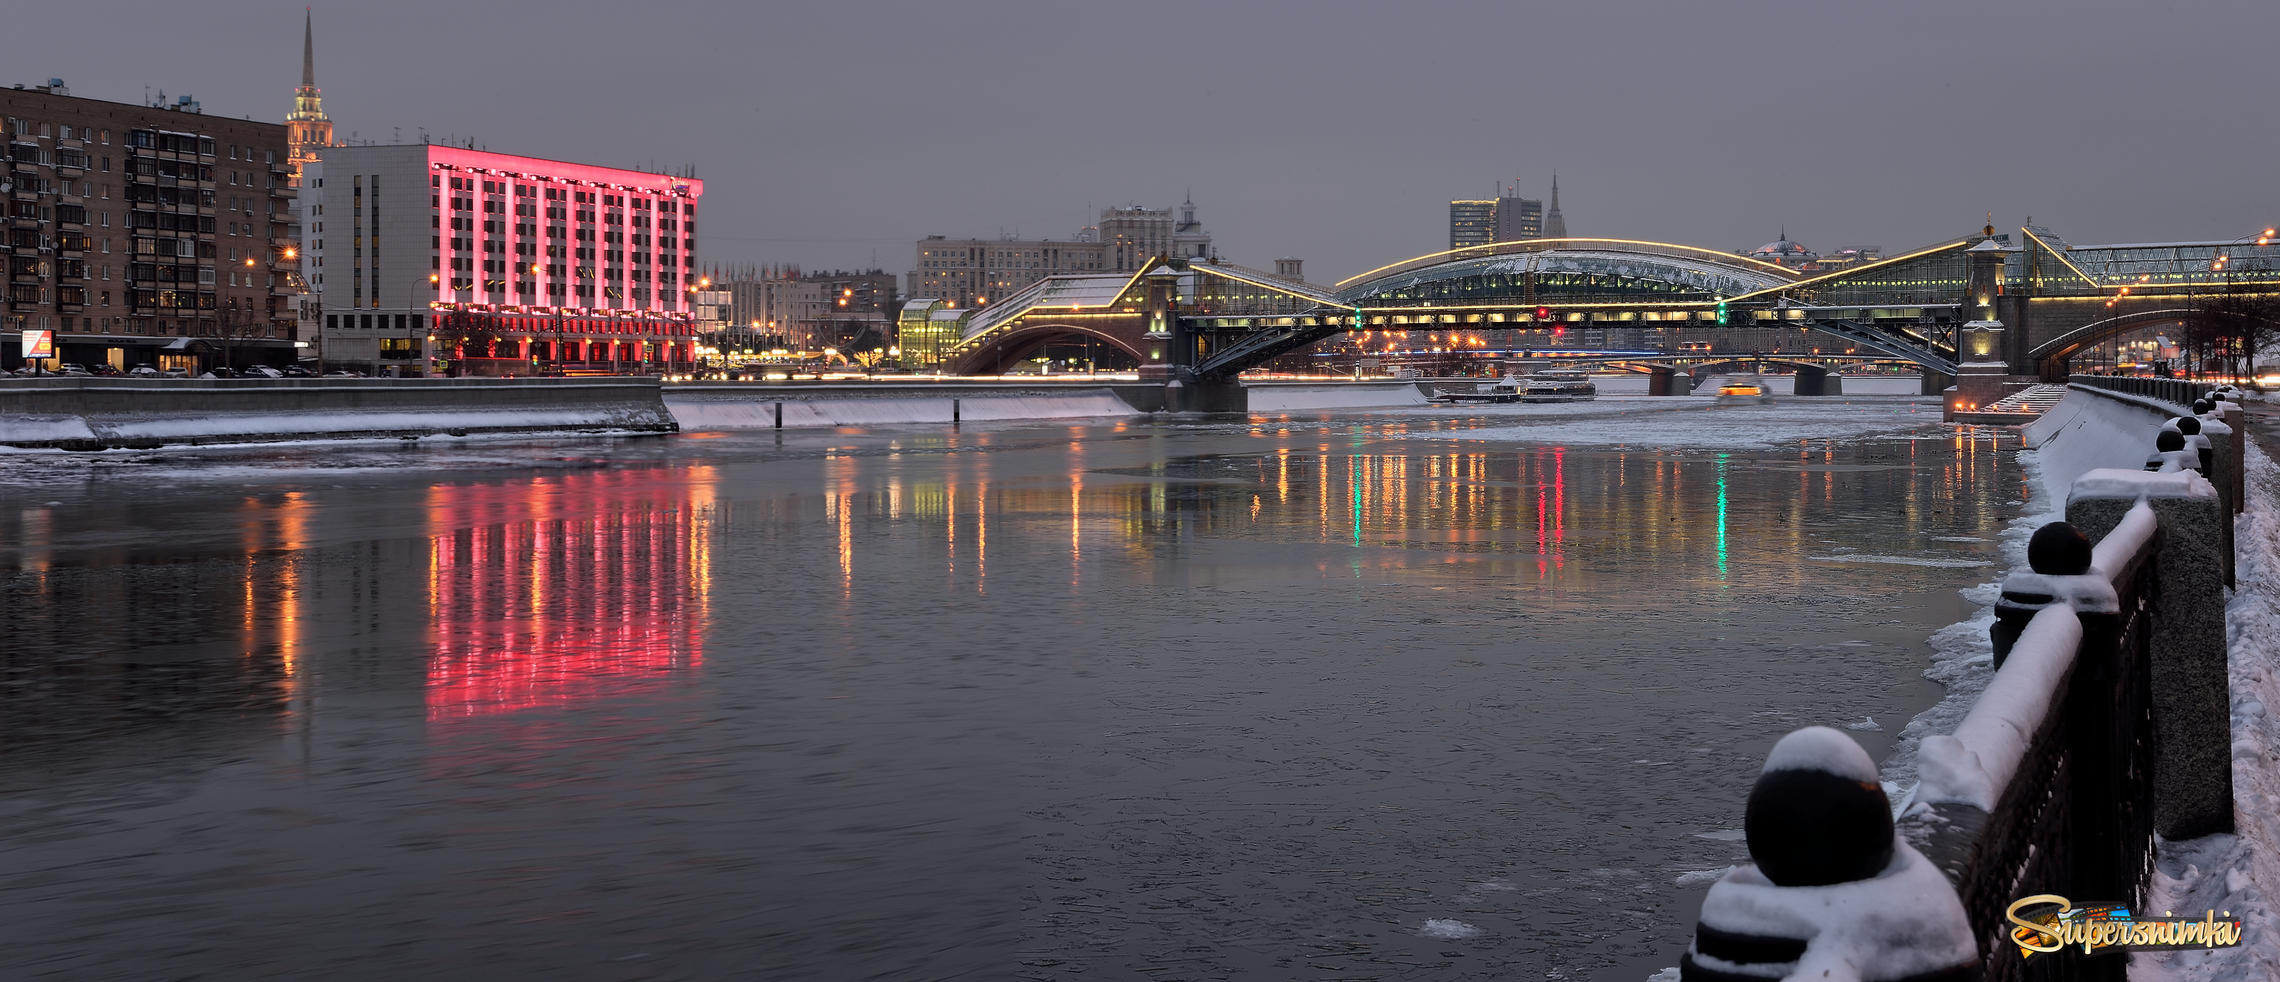 Общий вид на Рэдиссон-"Славянская" и мост Богдана Хмельницкого